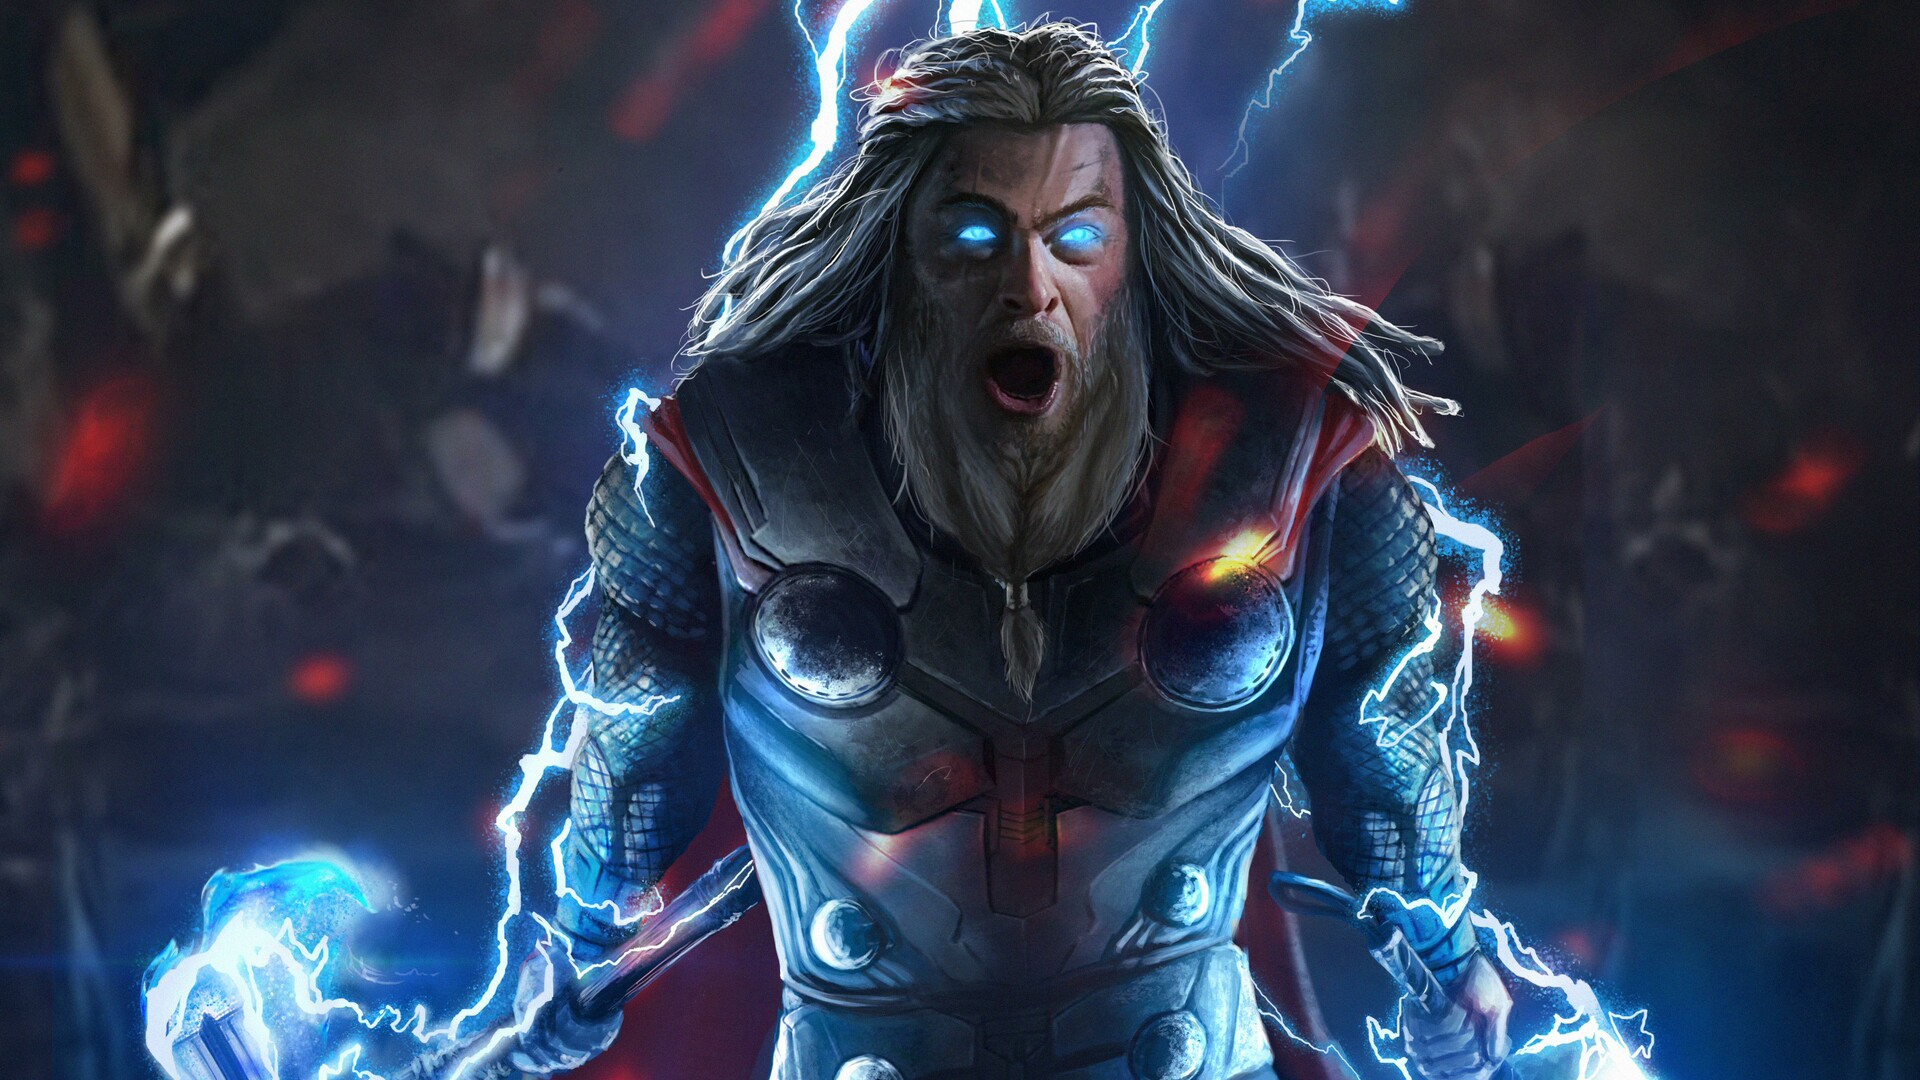 Descarga gratuita de fondo de pantalla para móvil de Celebridades, Thor.